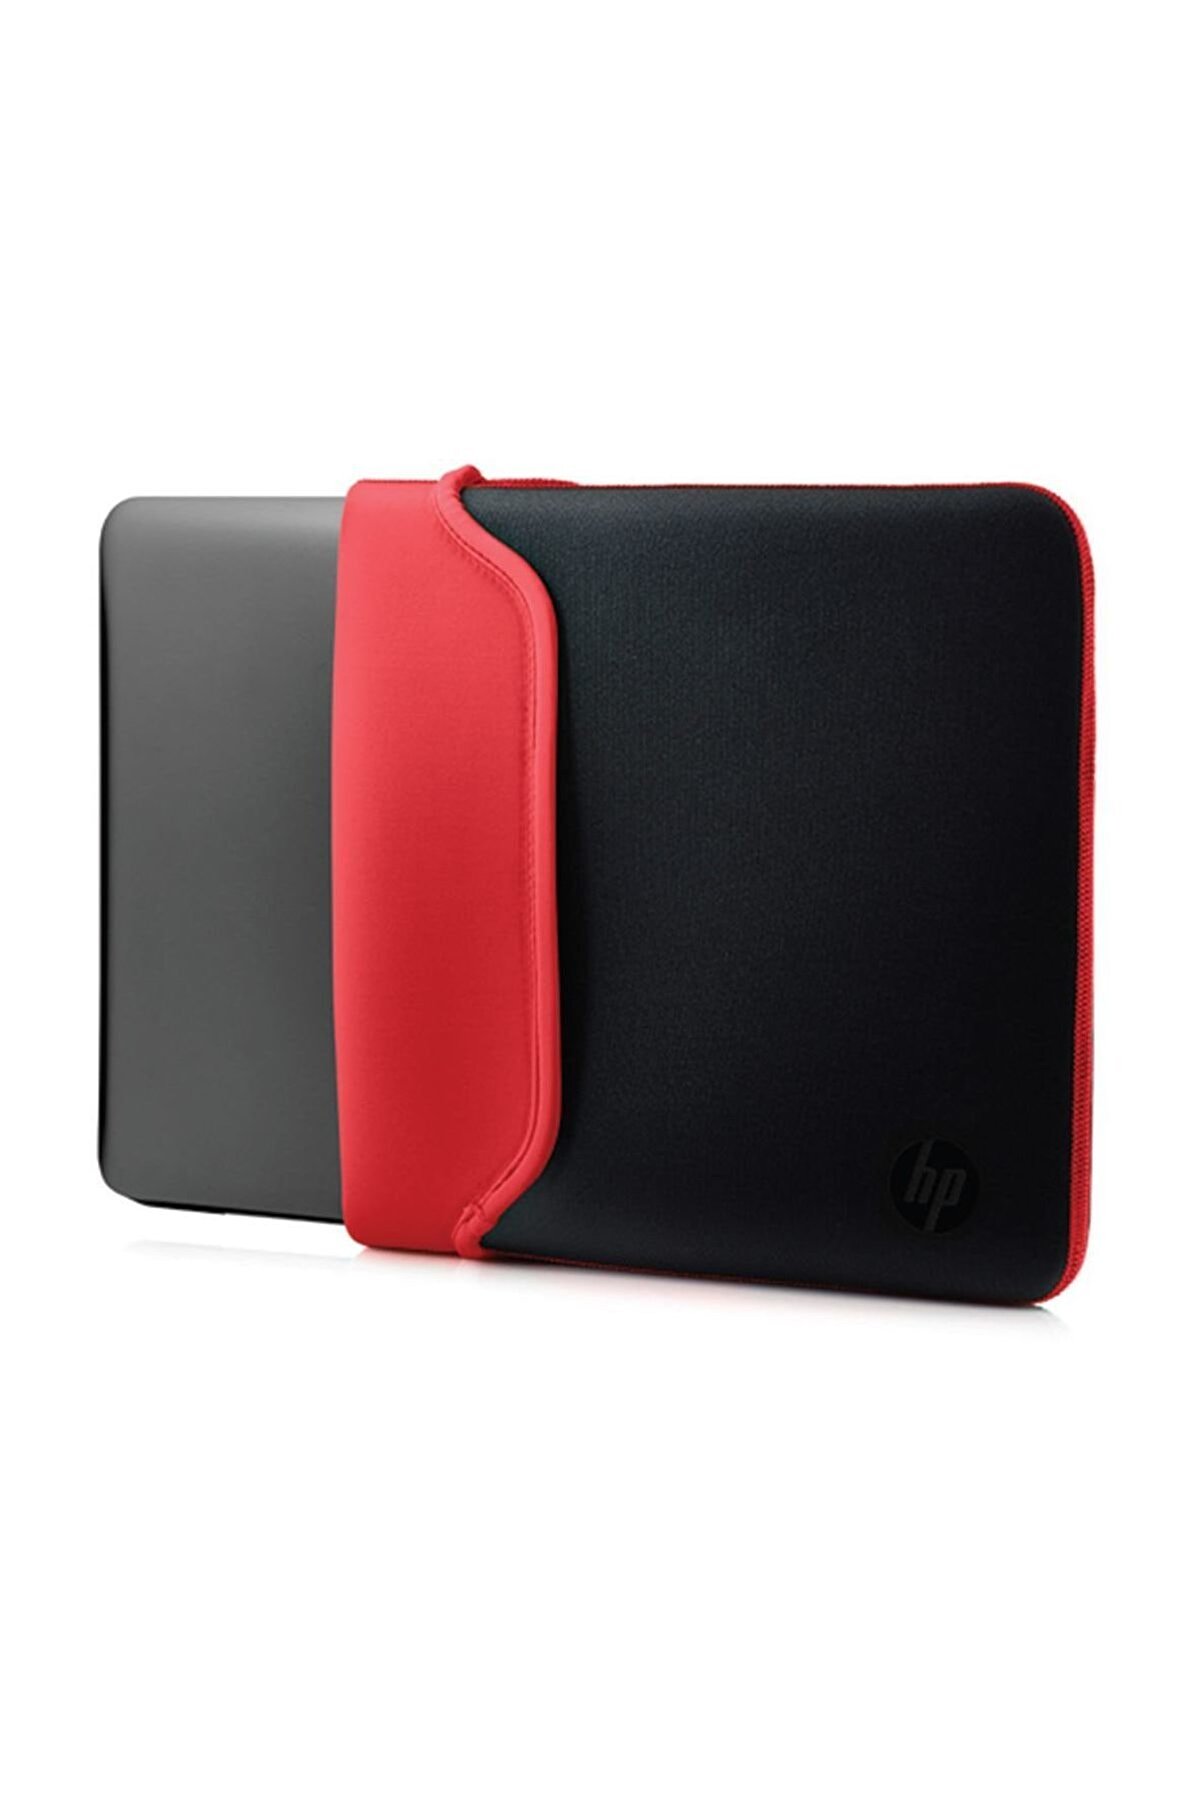 HP V5C30AA 15.6 Neopren Çevrilebilir Notebook Kılıf Siyah/Kırmızı